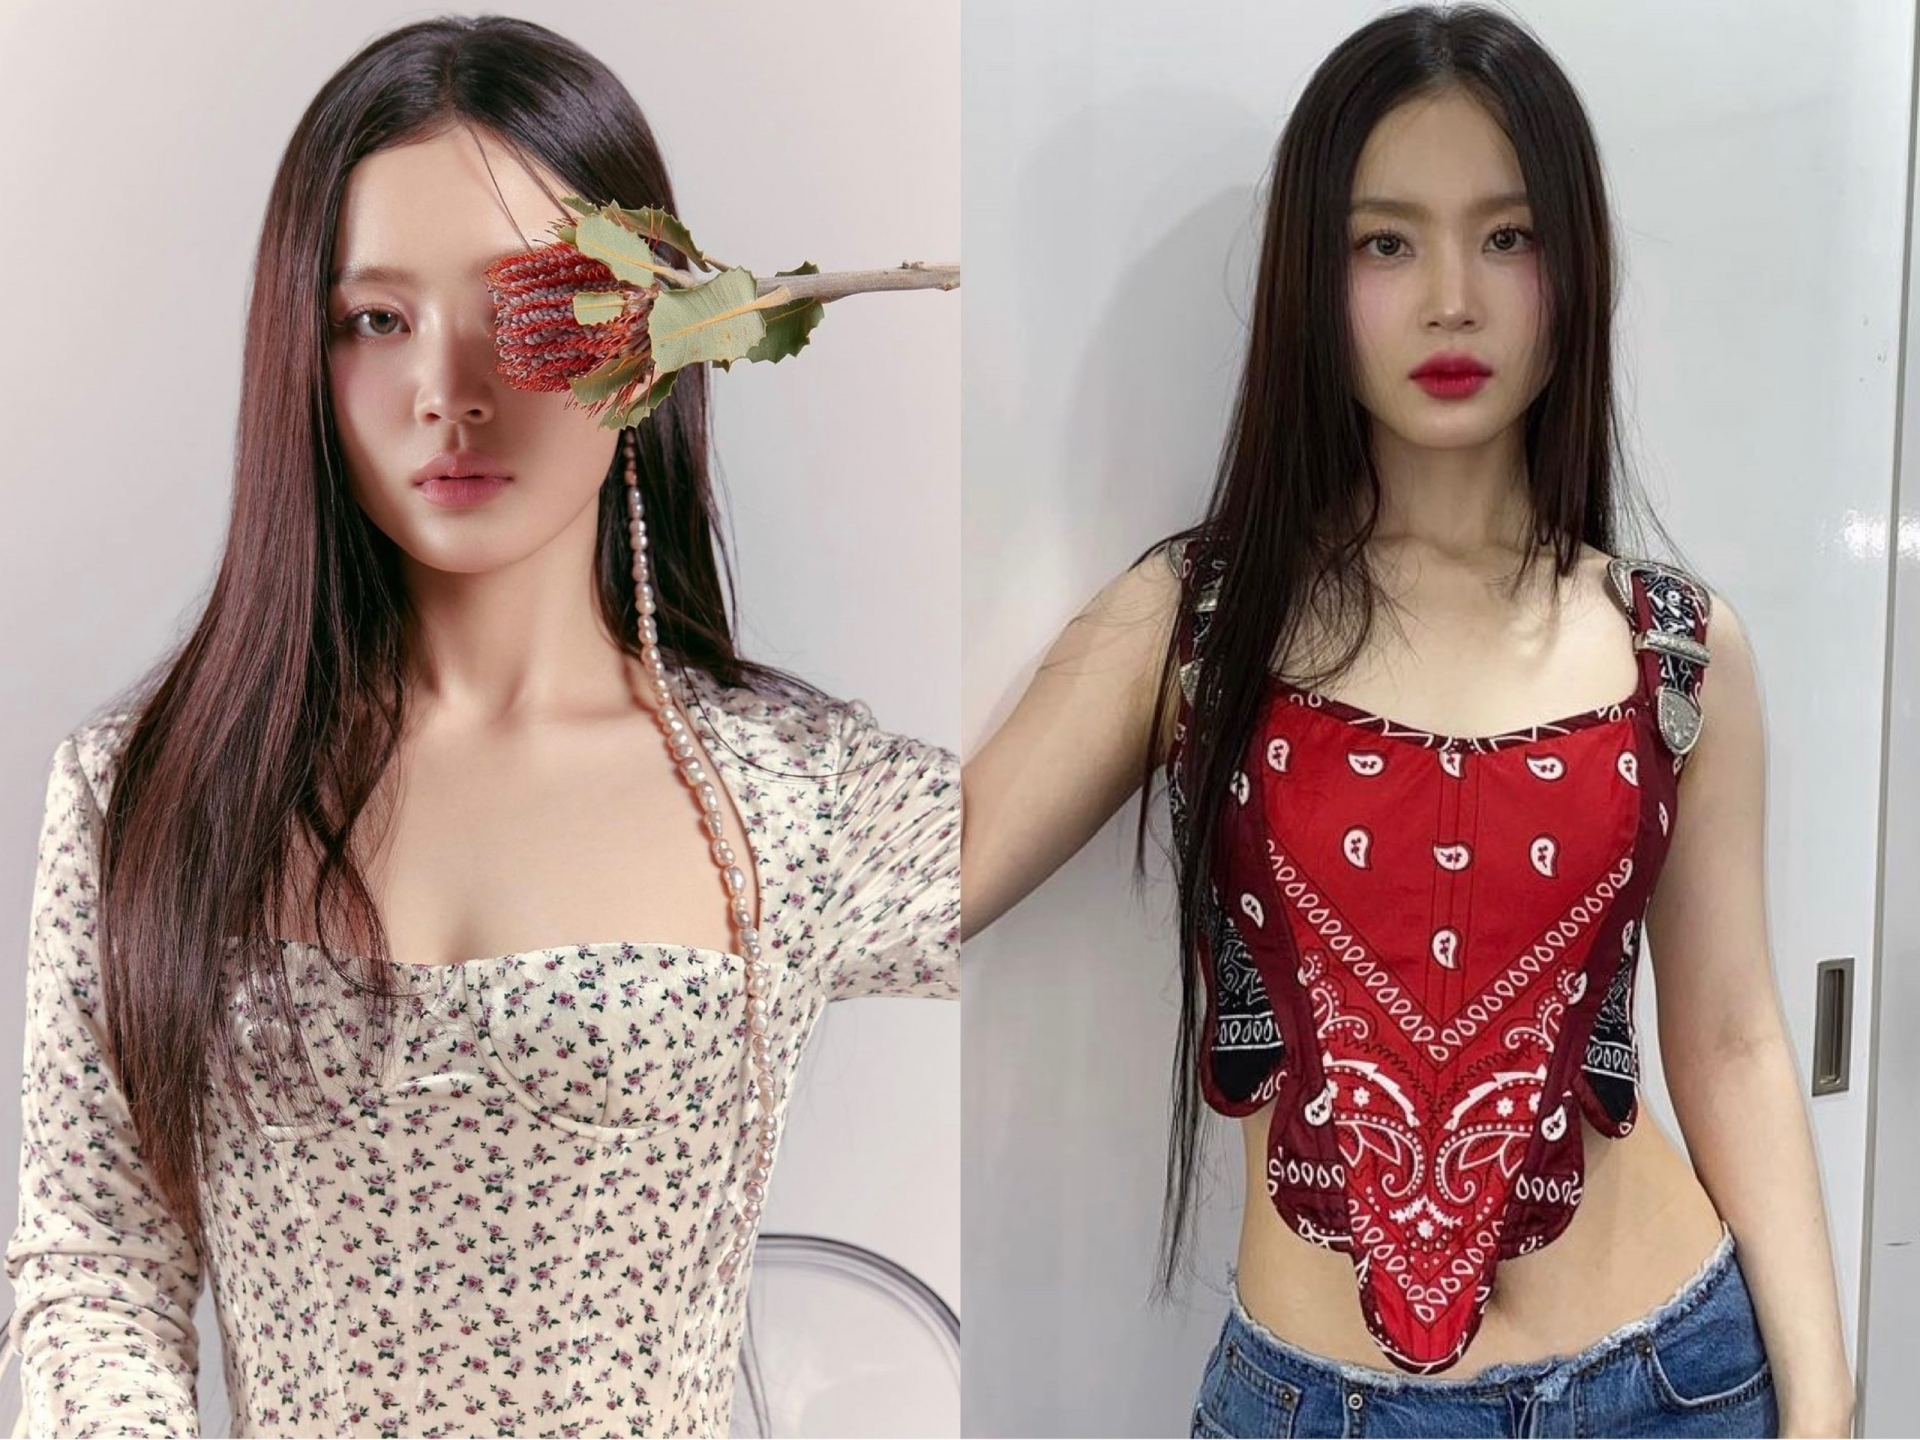 Nhan sắc xinh đẹp cùng vóc dáng ngày càng quyến rũ của Lee Hi khiến netizen vô cùng bất ngờ.